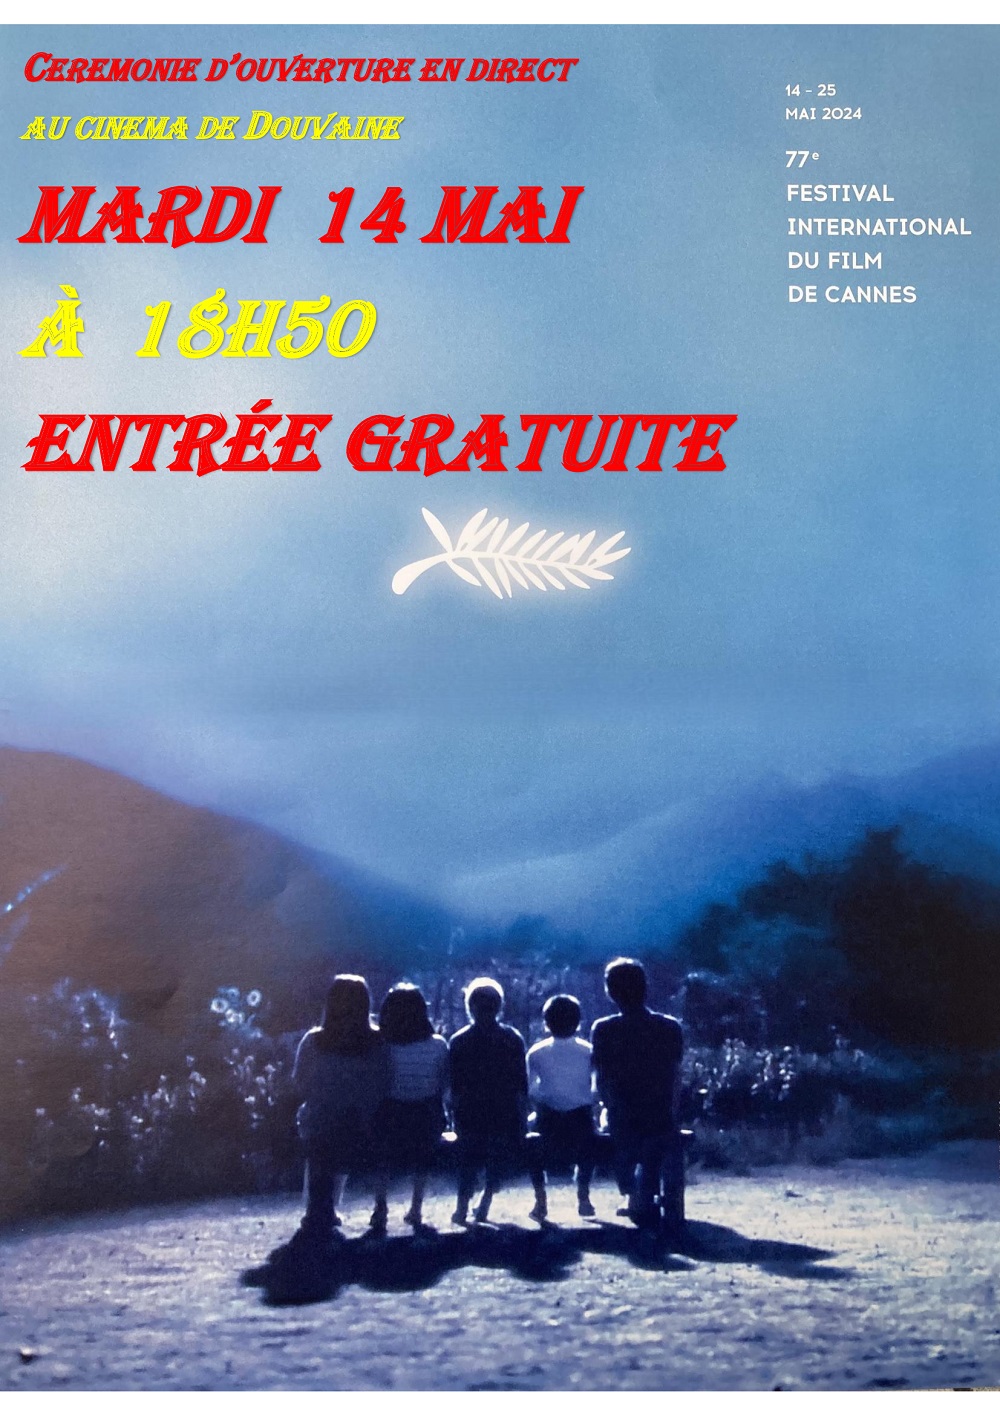 Affiche de la cérémonie d'ouverture du Festival de Cannes 2024 en directe au Cinéma de Douvaine le 14 mai 2024